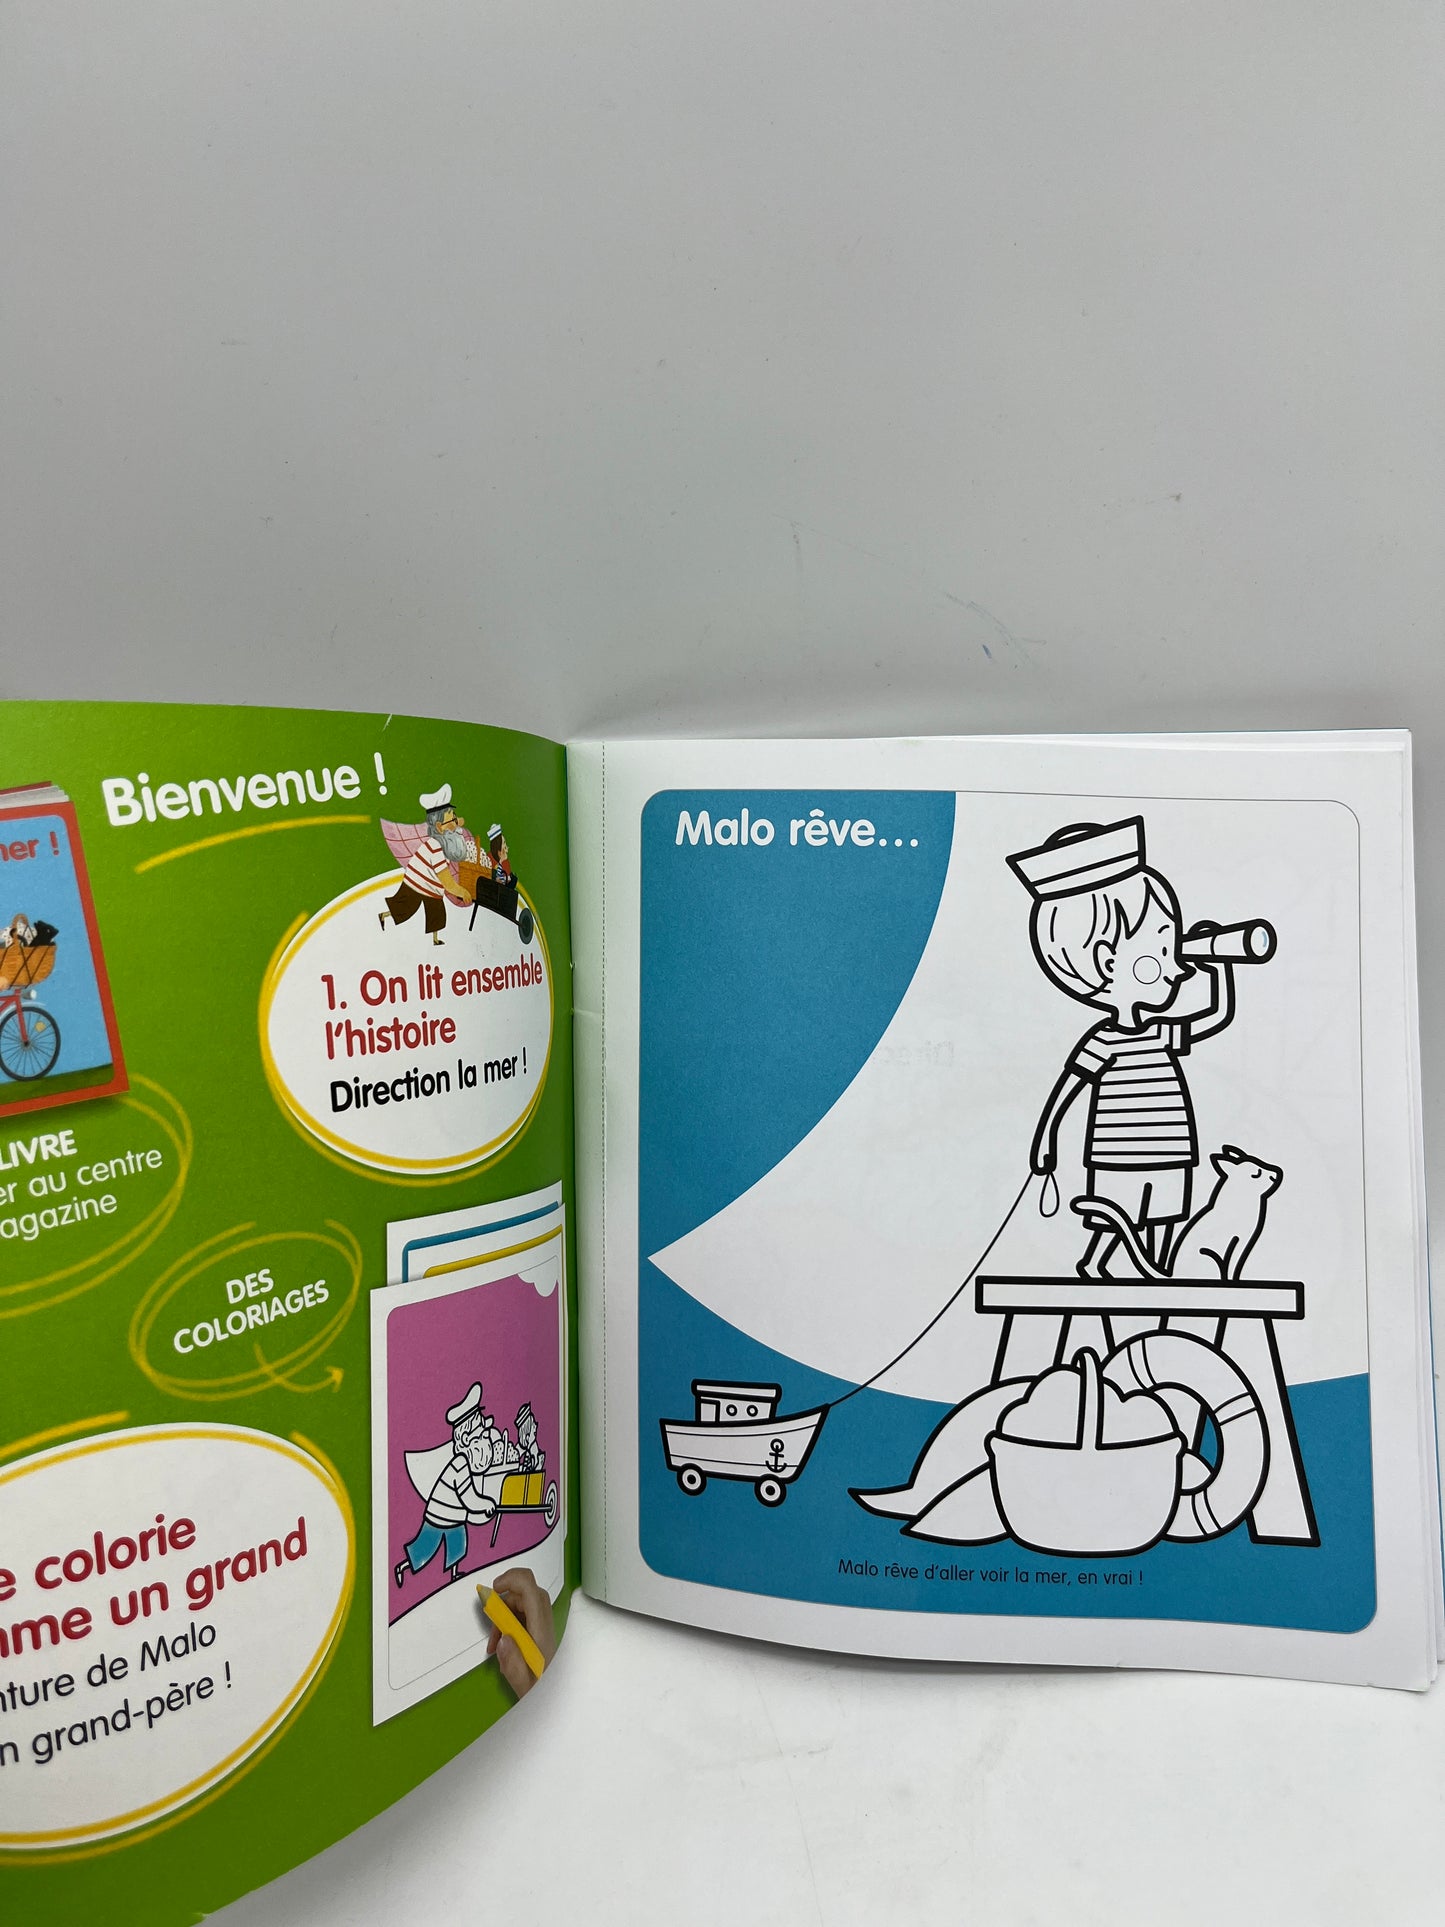 Livre d’activité Magazine Mon histoire à colorier  avec ses crayons de couleurs Neuf